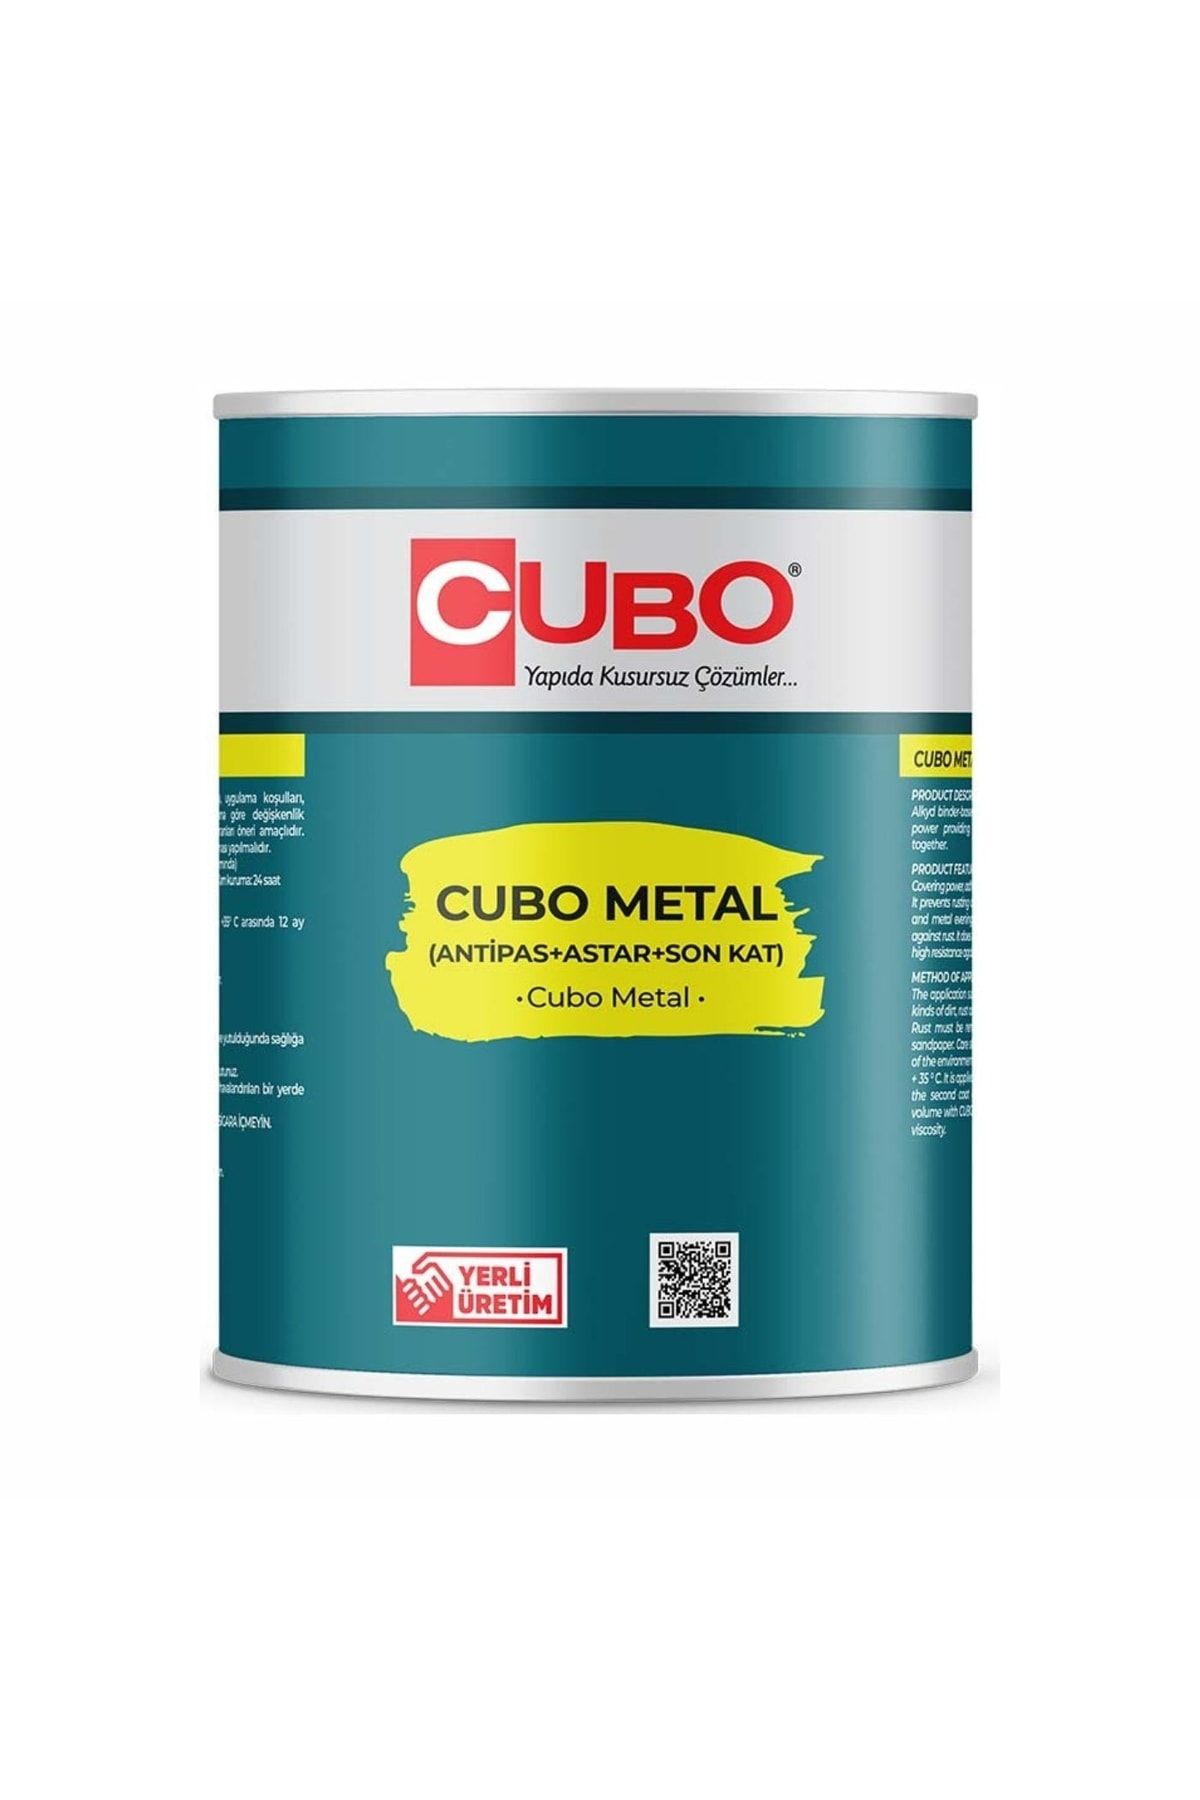 CUBO Metal Pas Üstü Boyası 0,75lt-astar Antipas Boya Tek Üründe-tek Işlemde 3 Uygulama Sağlar